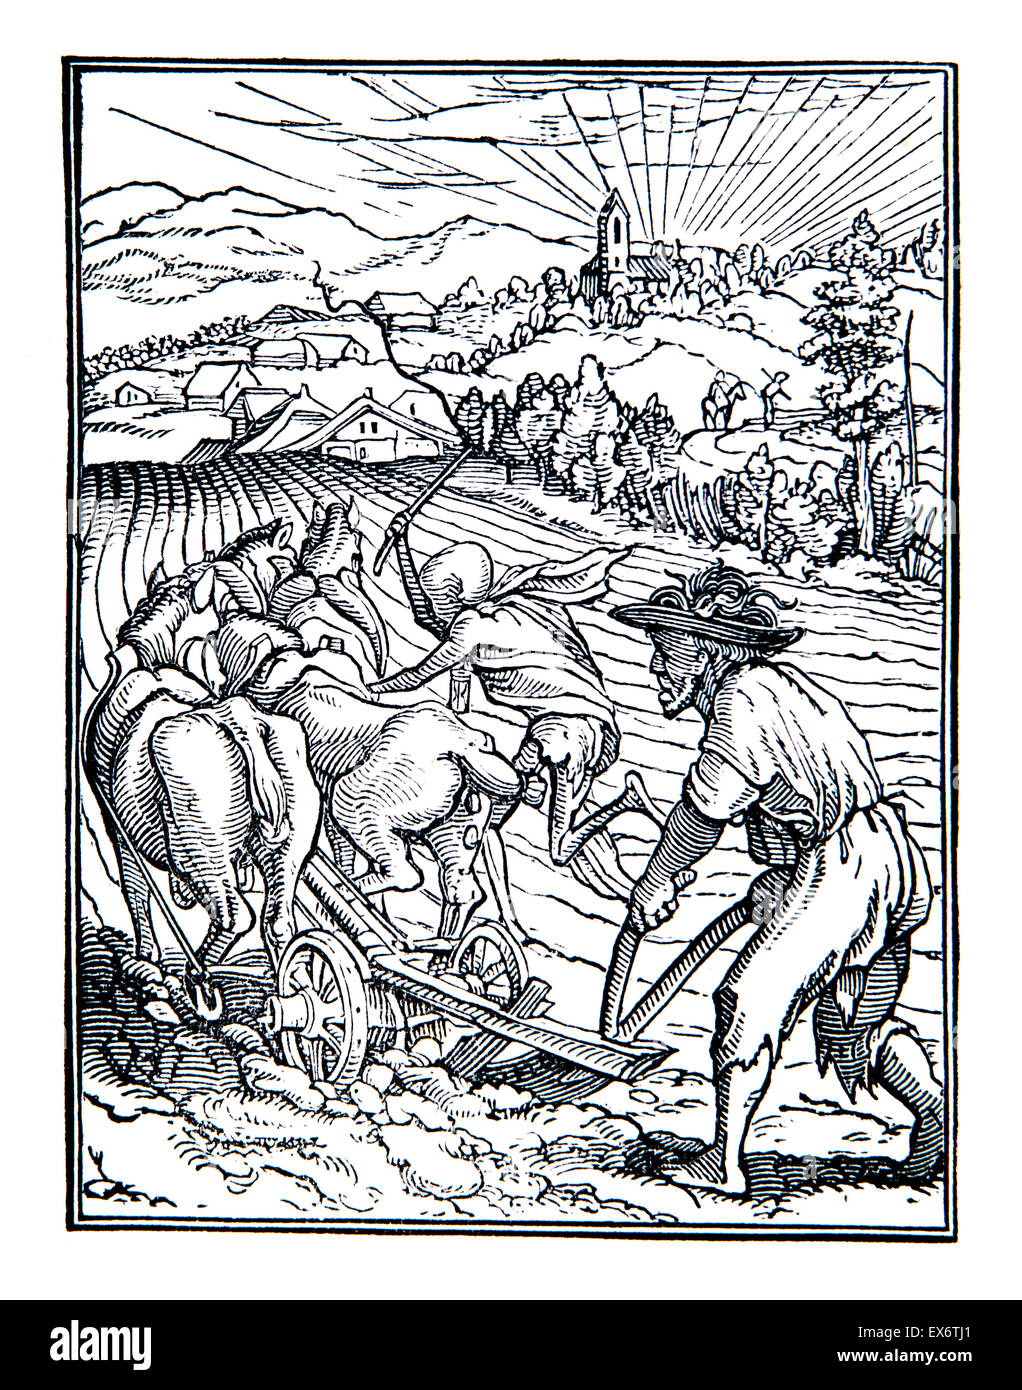 Le laboureur, illustration par Hans Holbein à partir de 1538 La danse de mort Banque D'Images